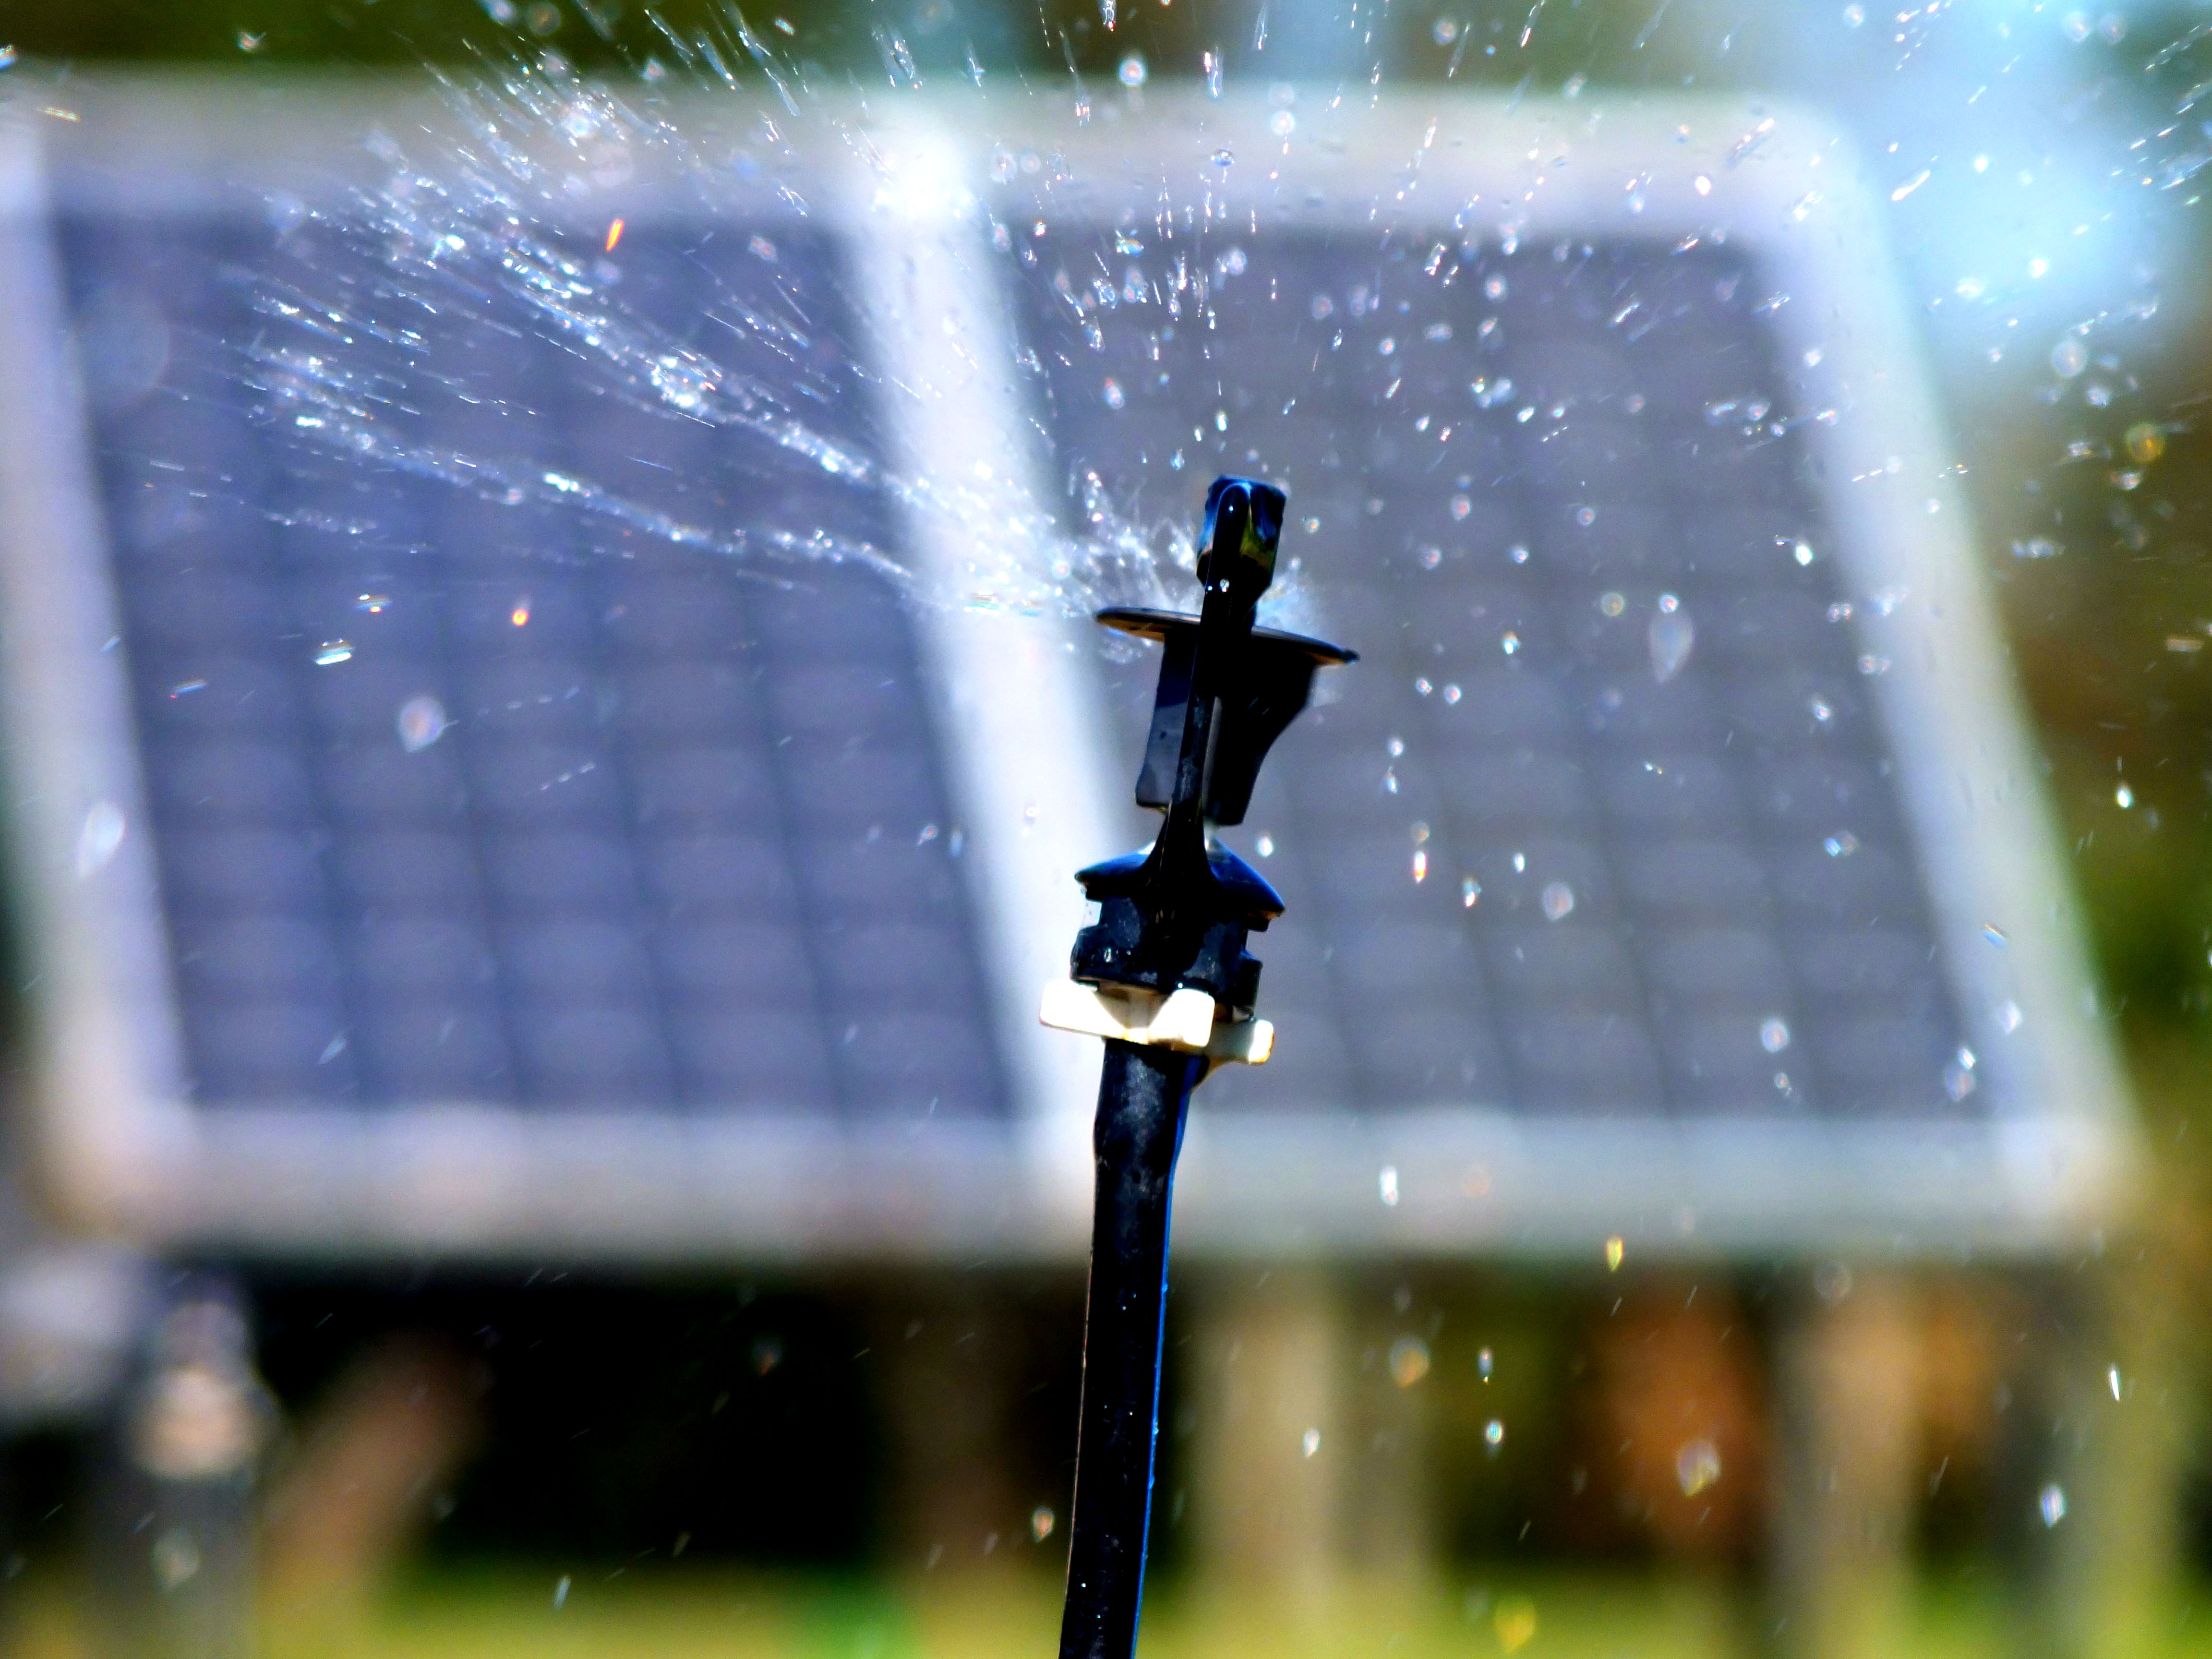 Sistema de irrigação sustentável por meio de ciclo hidrológico e movido à energia solar fotovoltaica